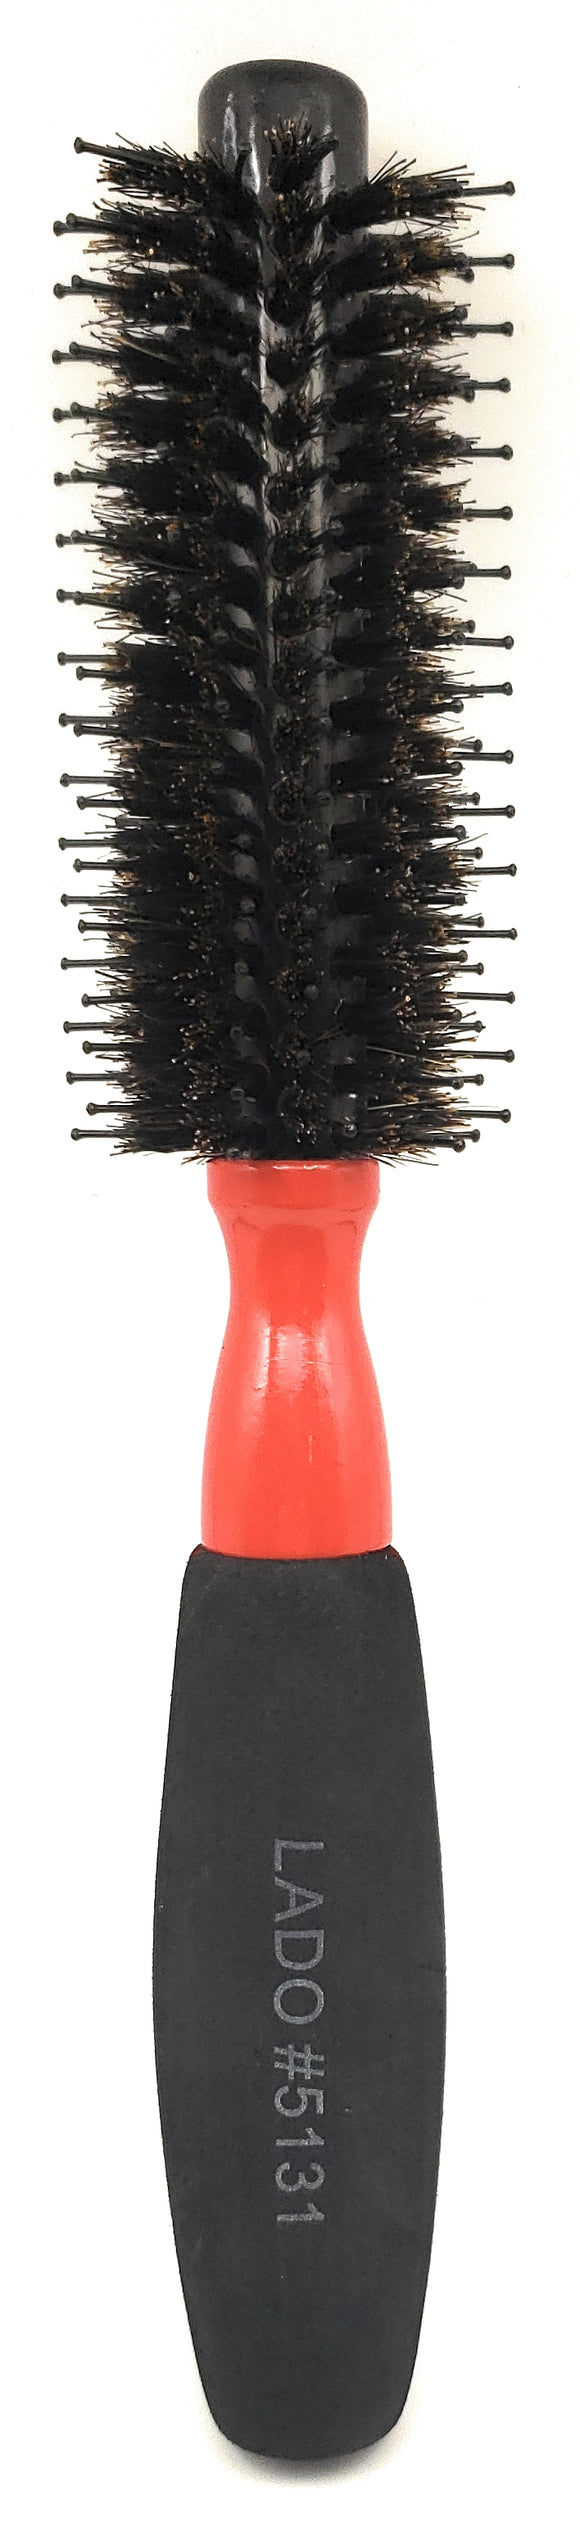 Black Porcupine Ceramic Round Brush